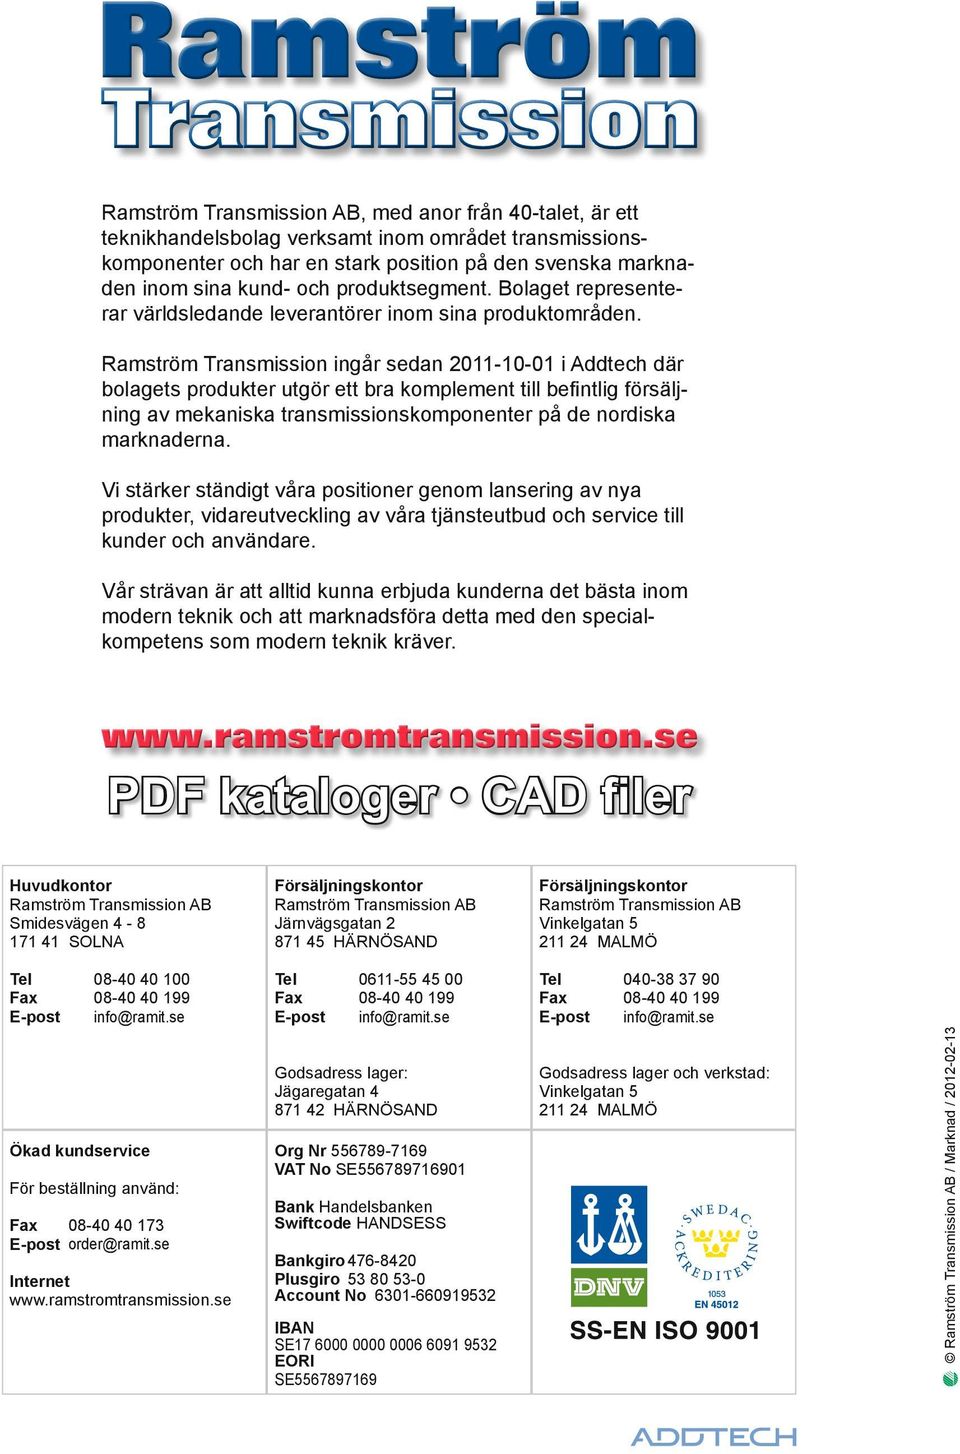 Ramström Transmission ingår sean 2011-10-01 i Atech är bolagets proukter utgör ett bra komplement till befintlig försäljning av mekaniska transmissionskomponenter på e noriska marknaerna.